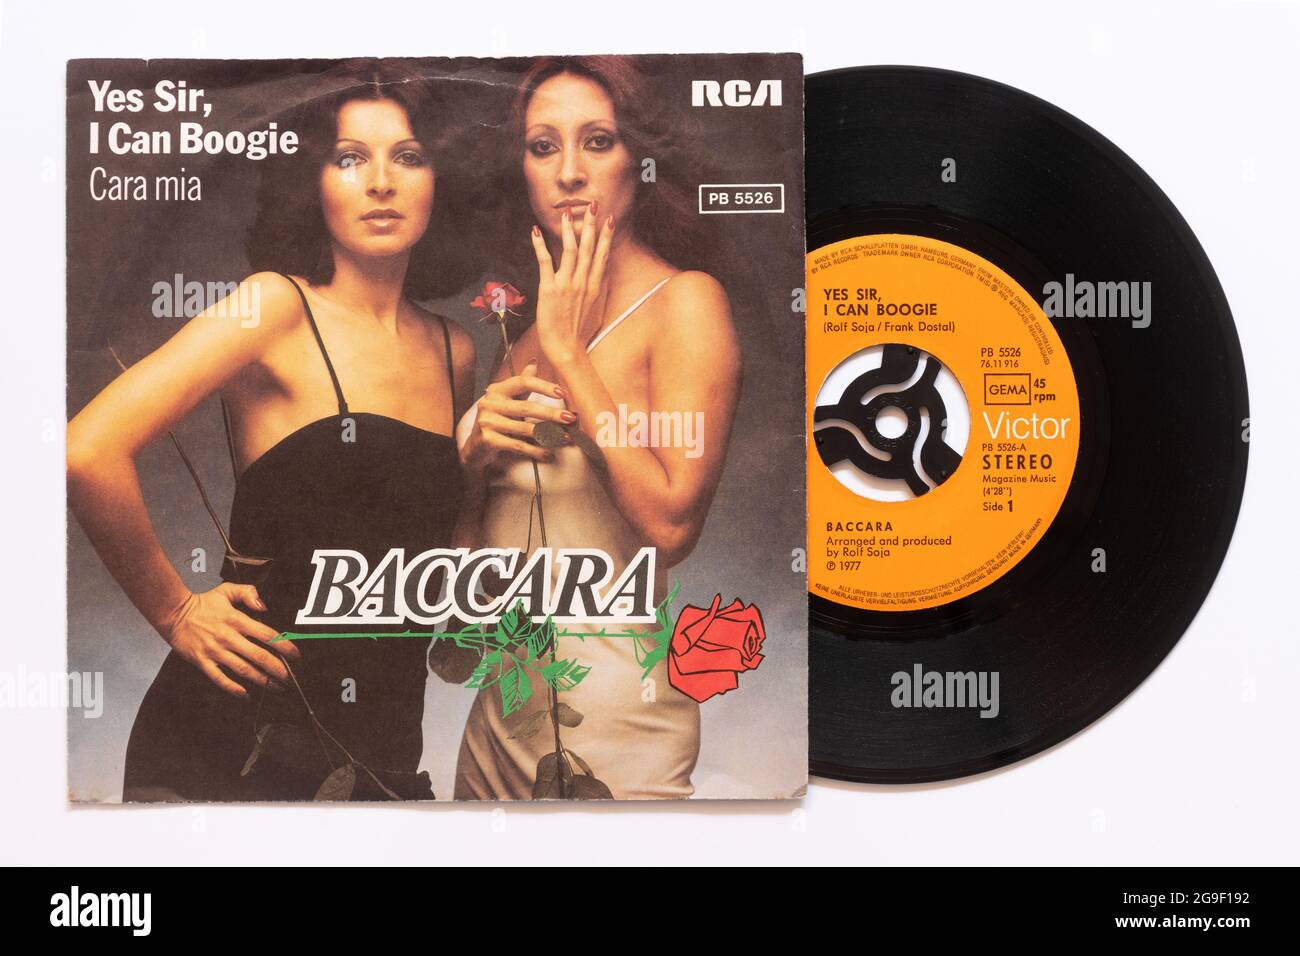 'Yes Sir, i Can Boogie' del duo vocale spagnolo Baccara, una foto d'archivio del disco da 7' in vinile singolo a 45 giri/min in copertina Foto Stock